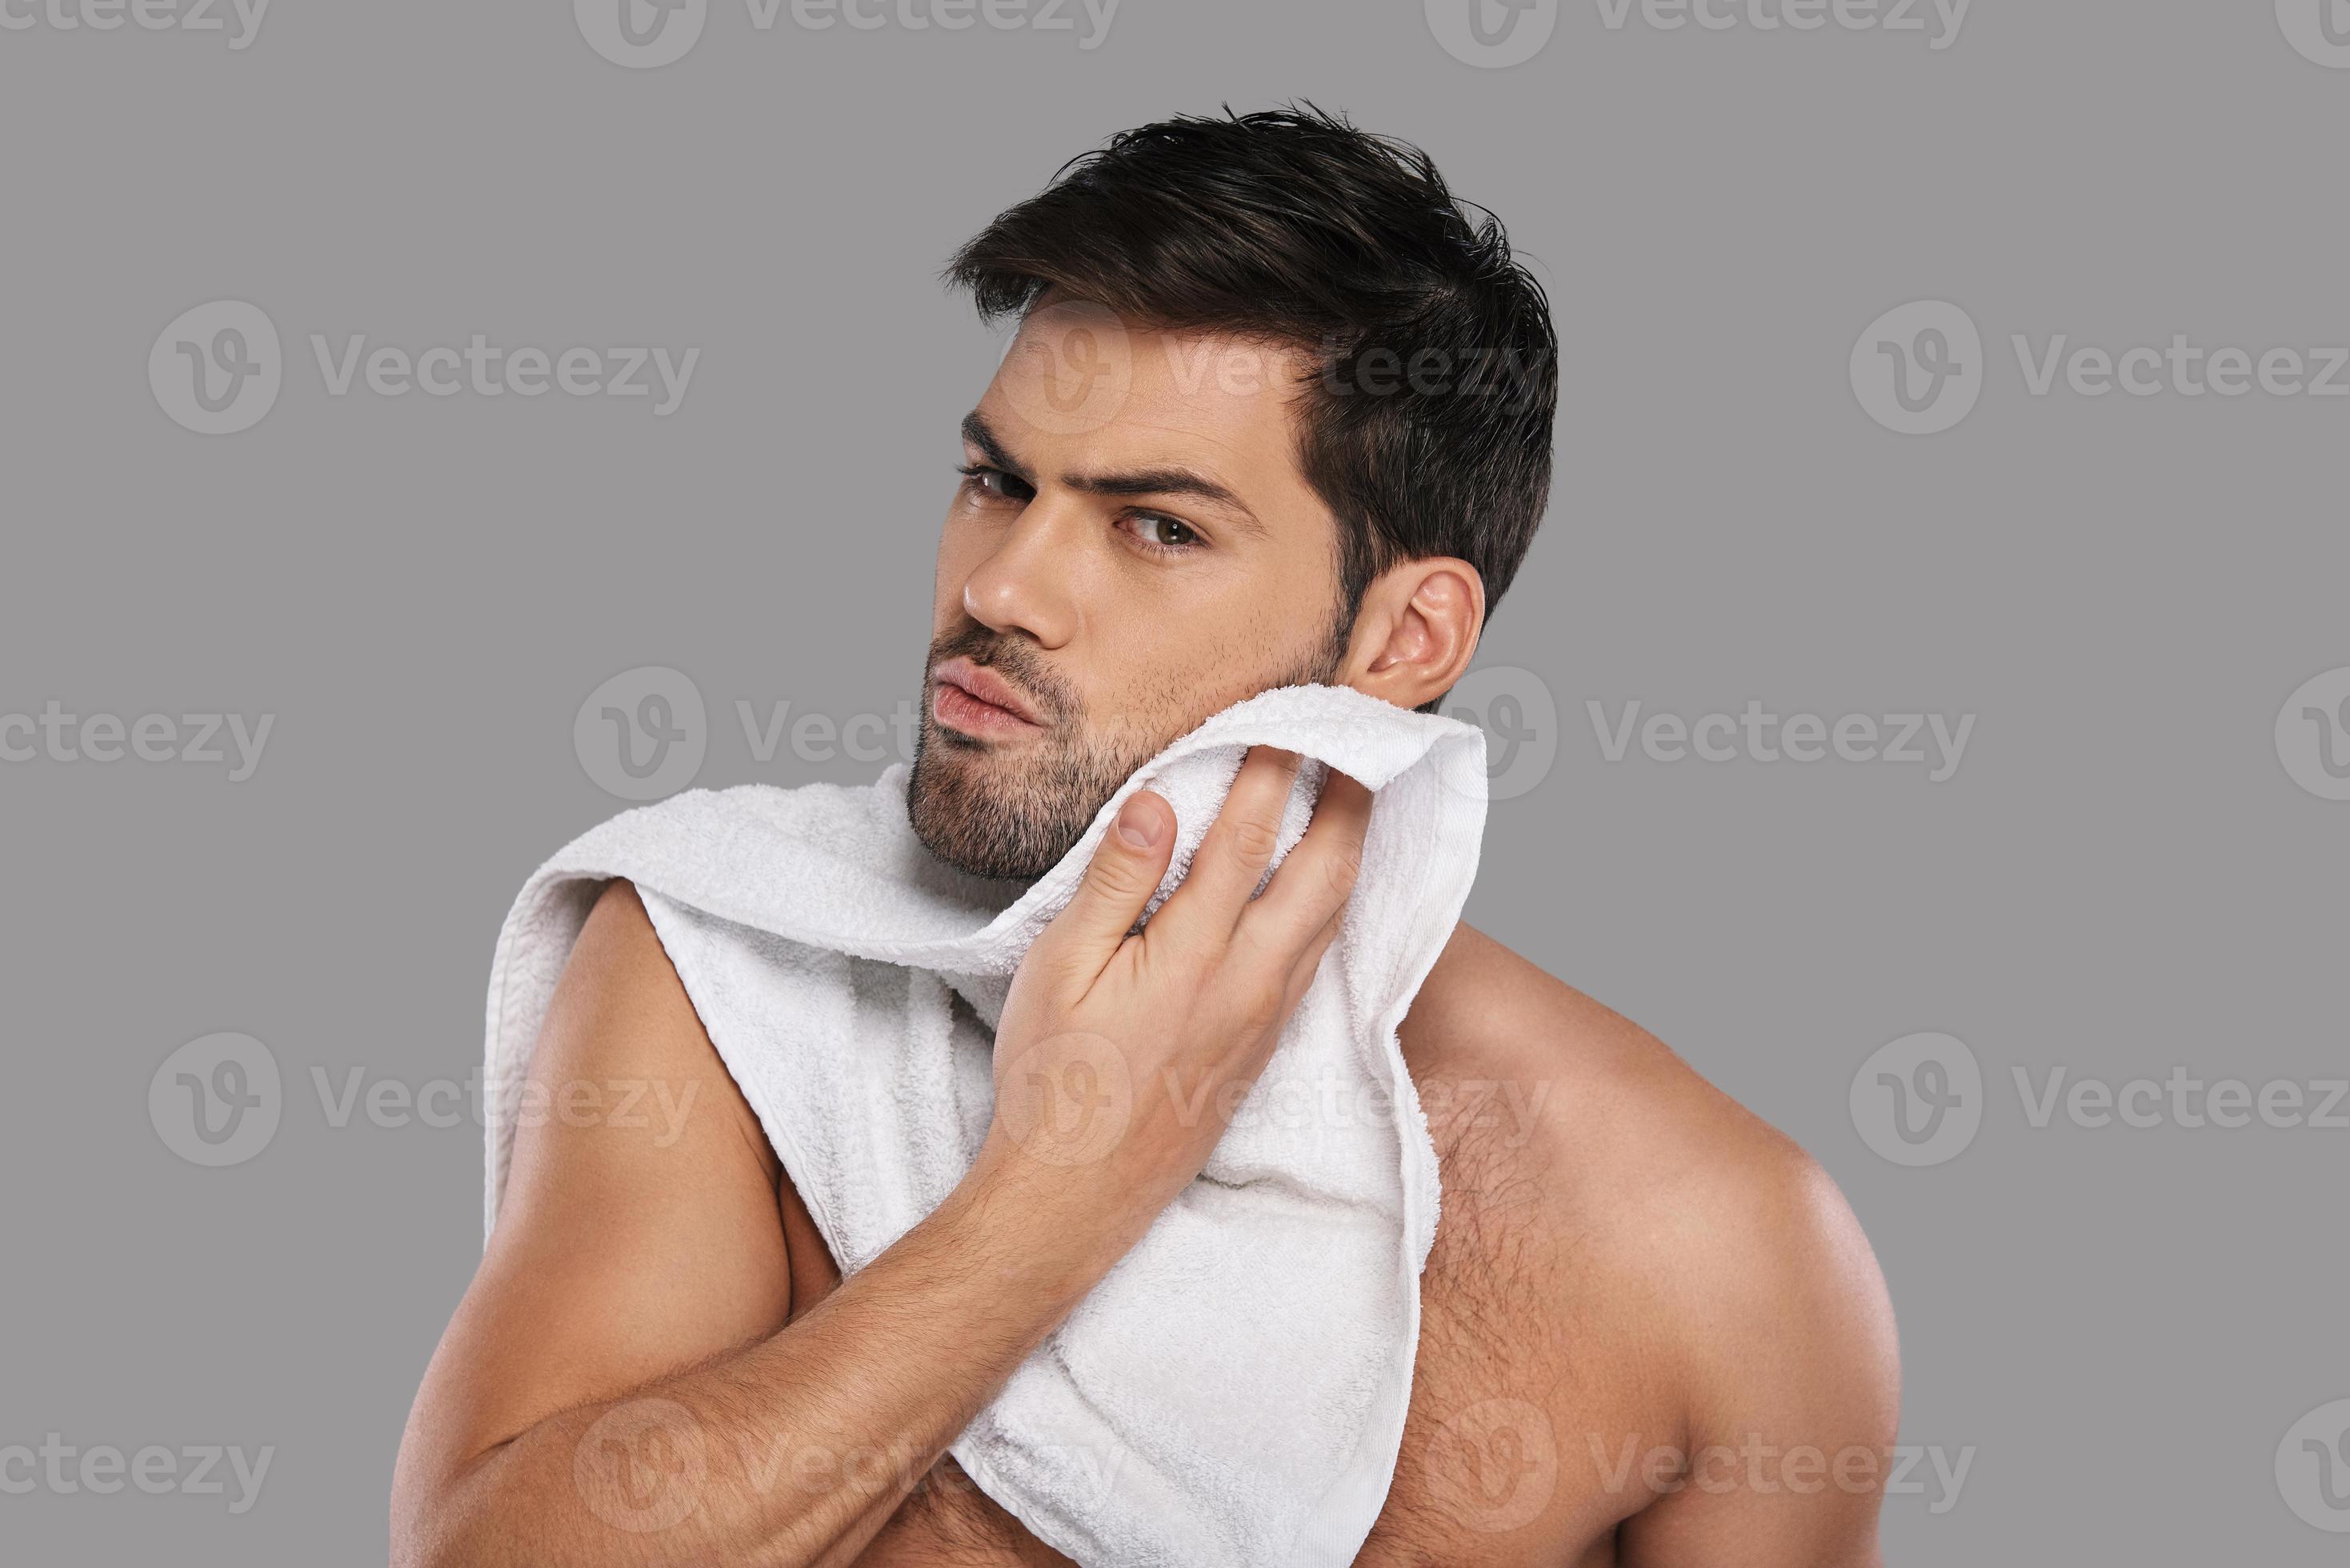 Fotos de Hombre limpiándose con toalla en el gimnasio - Imagen de